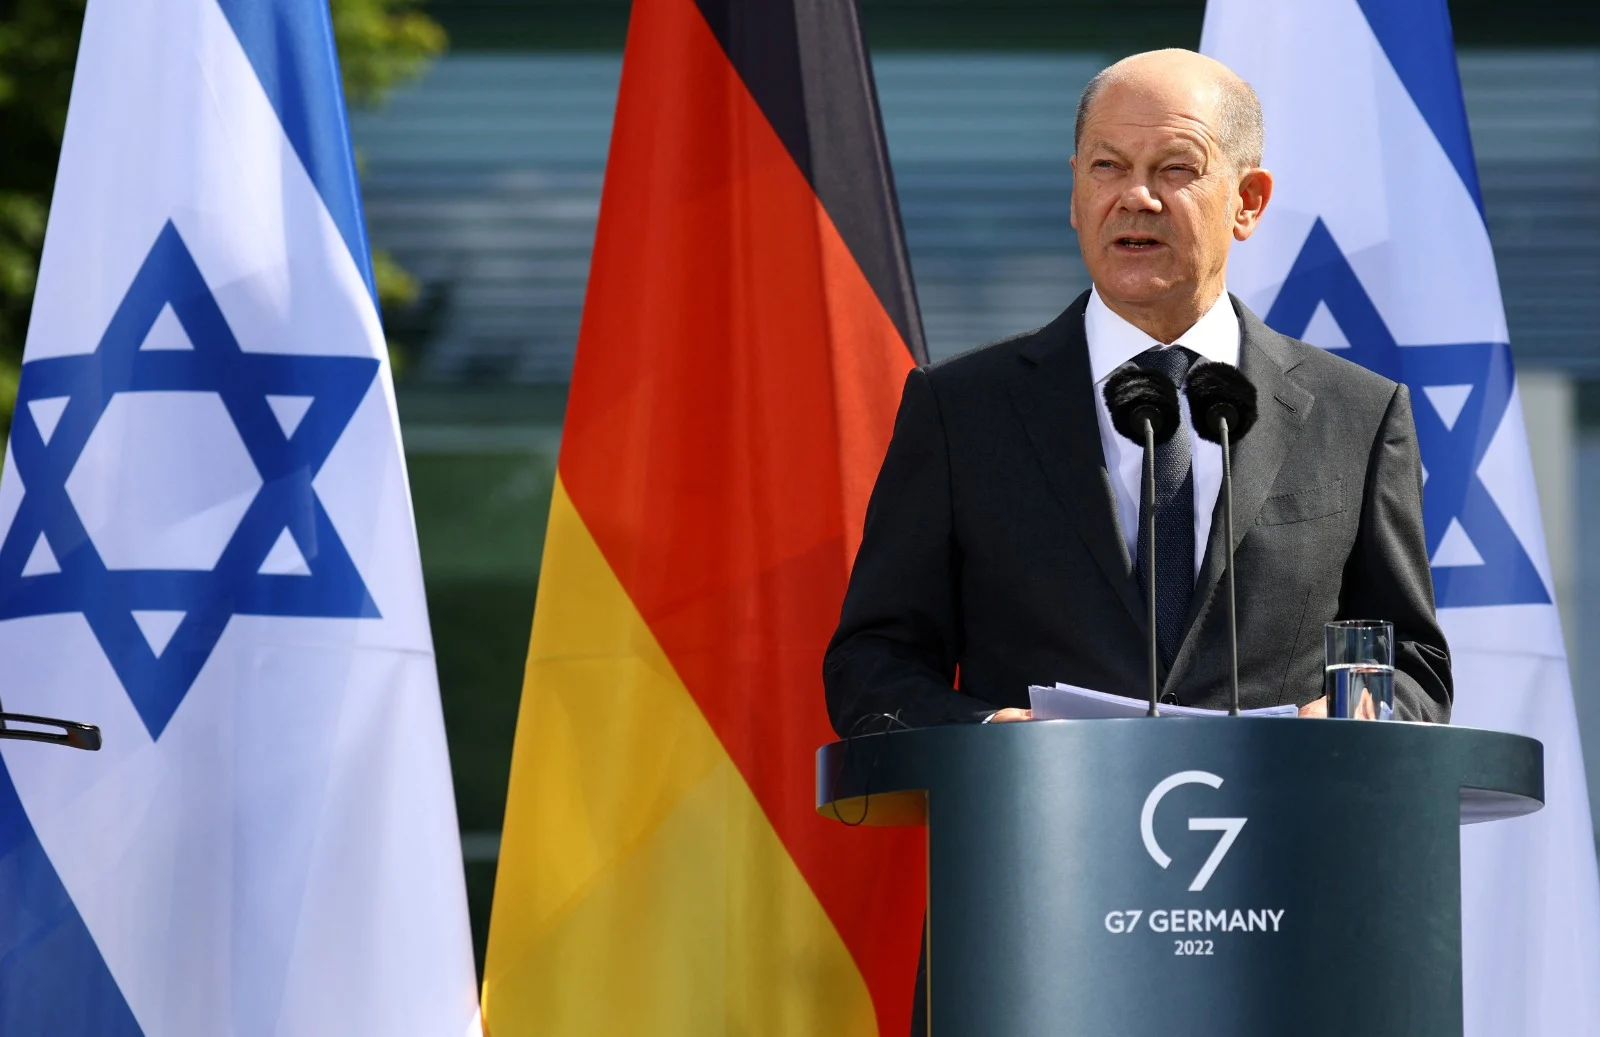 קנצלר גרמניה אולף שולץ במסיבת העיתונאים בברלין המשותפת עם ראש הממשלה יאיר לפיד